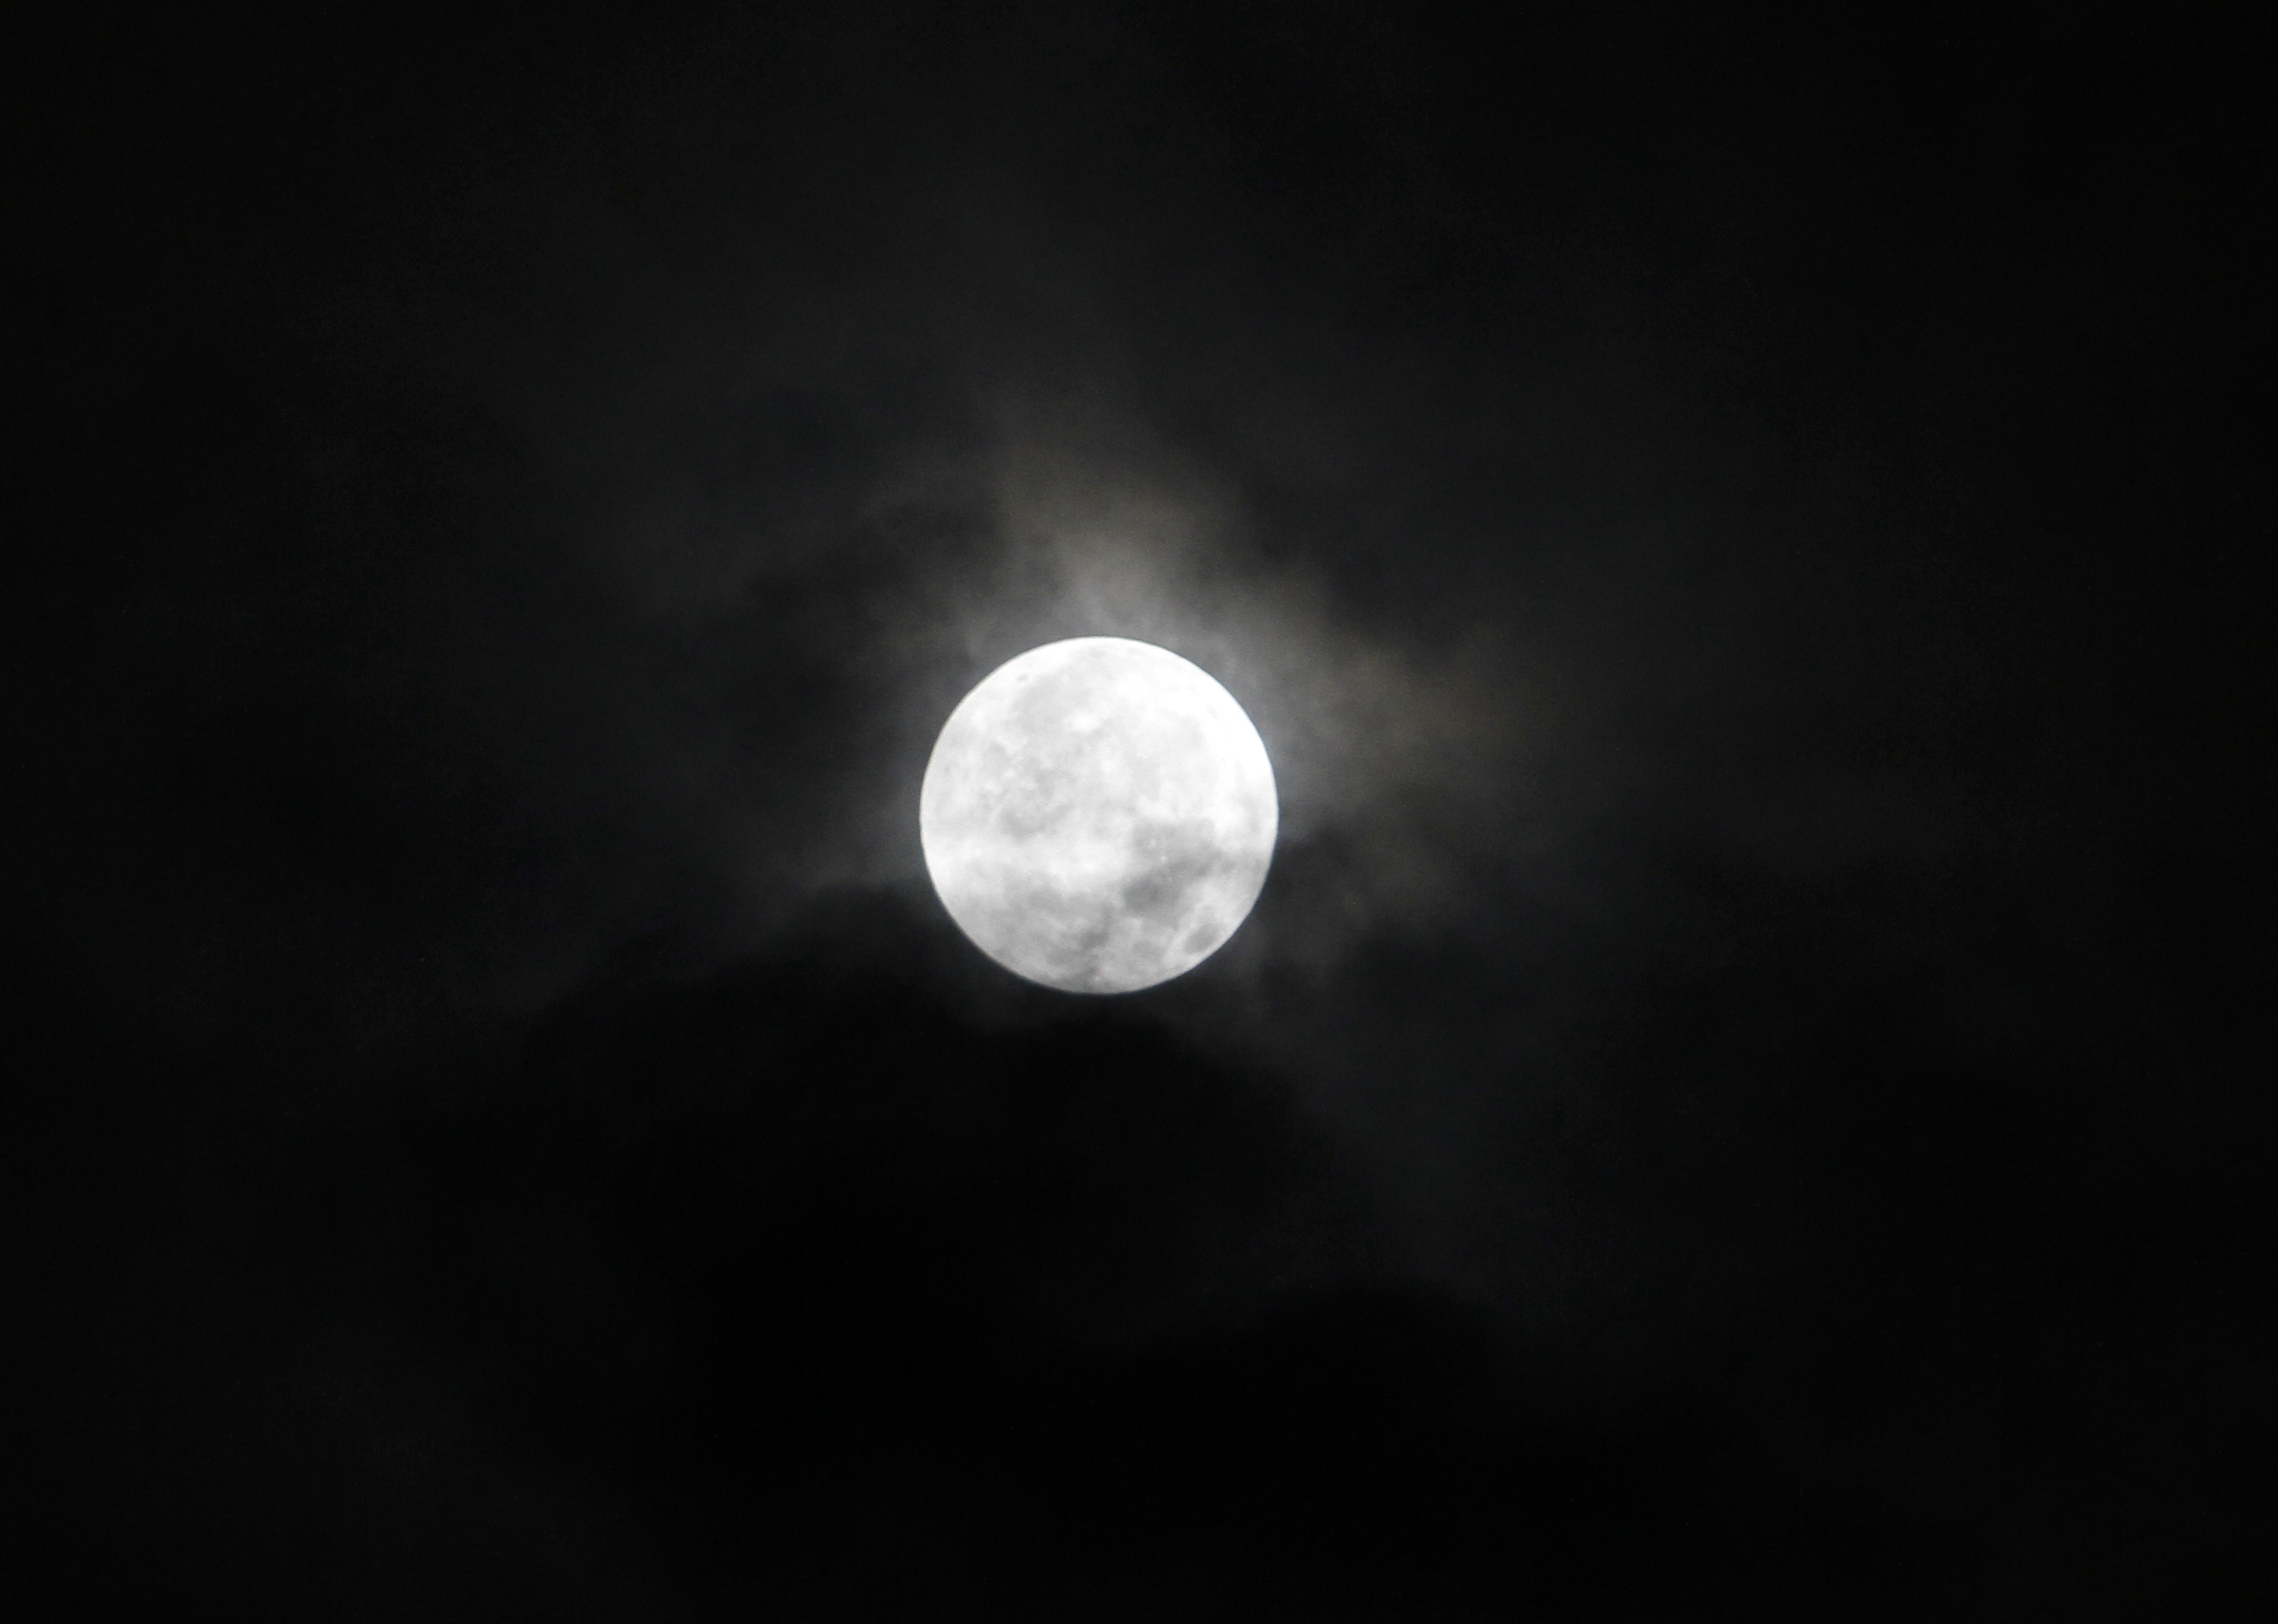 Fenomena alam Gerhana Bulan Penumbra terjadi karena sebagian atau keseluruhan penampang Bulan tertutupi oleh bayangan Bumi (Ashar/Sinpo.id